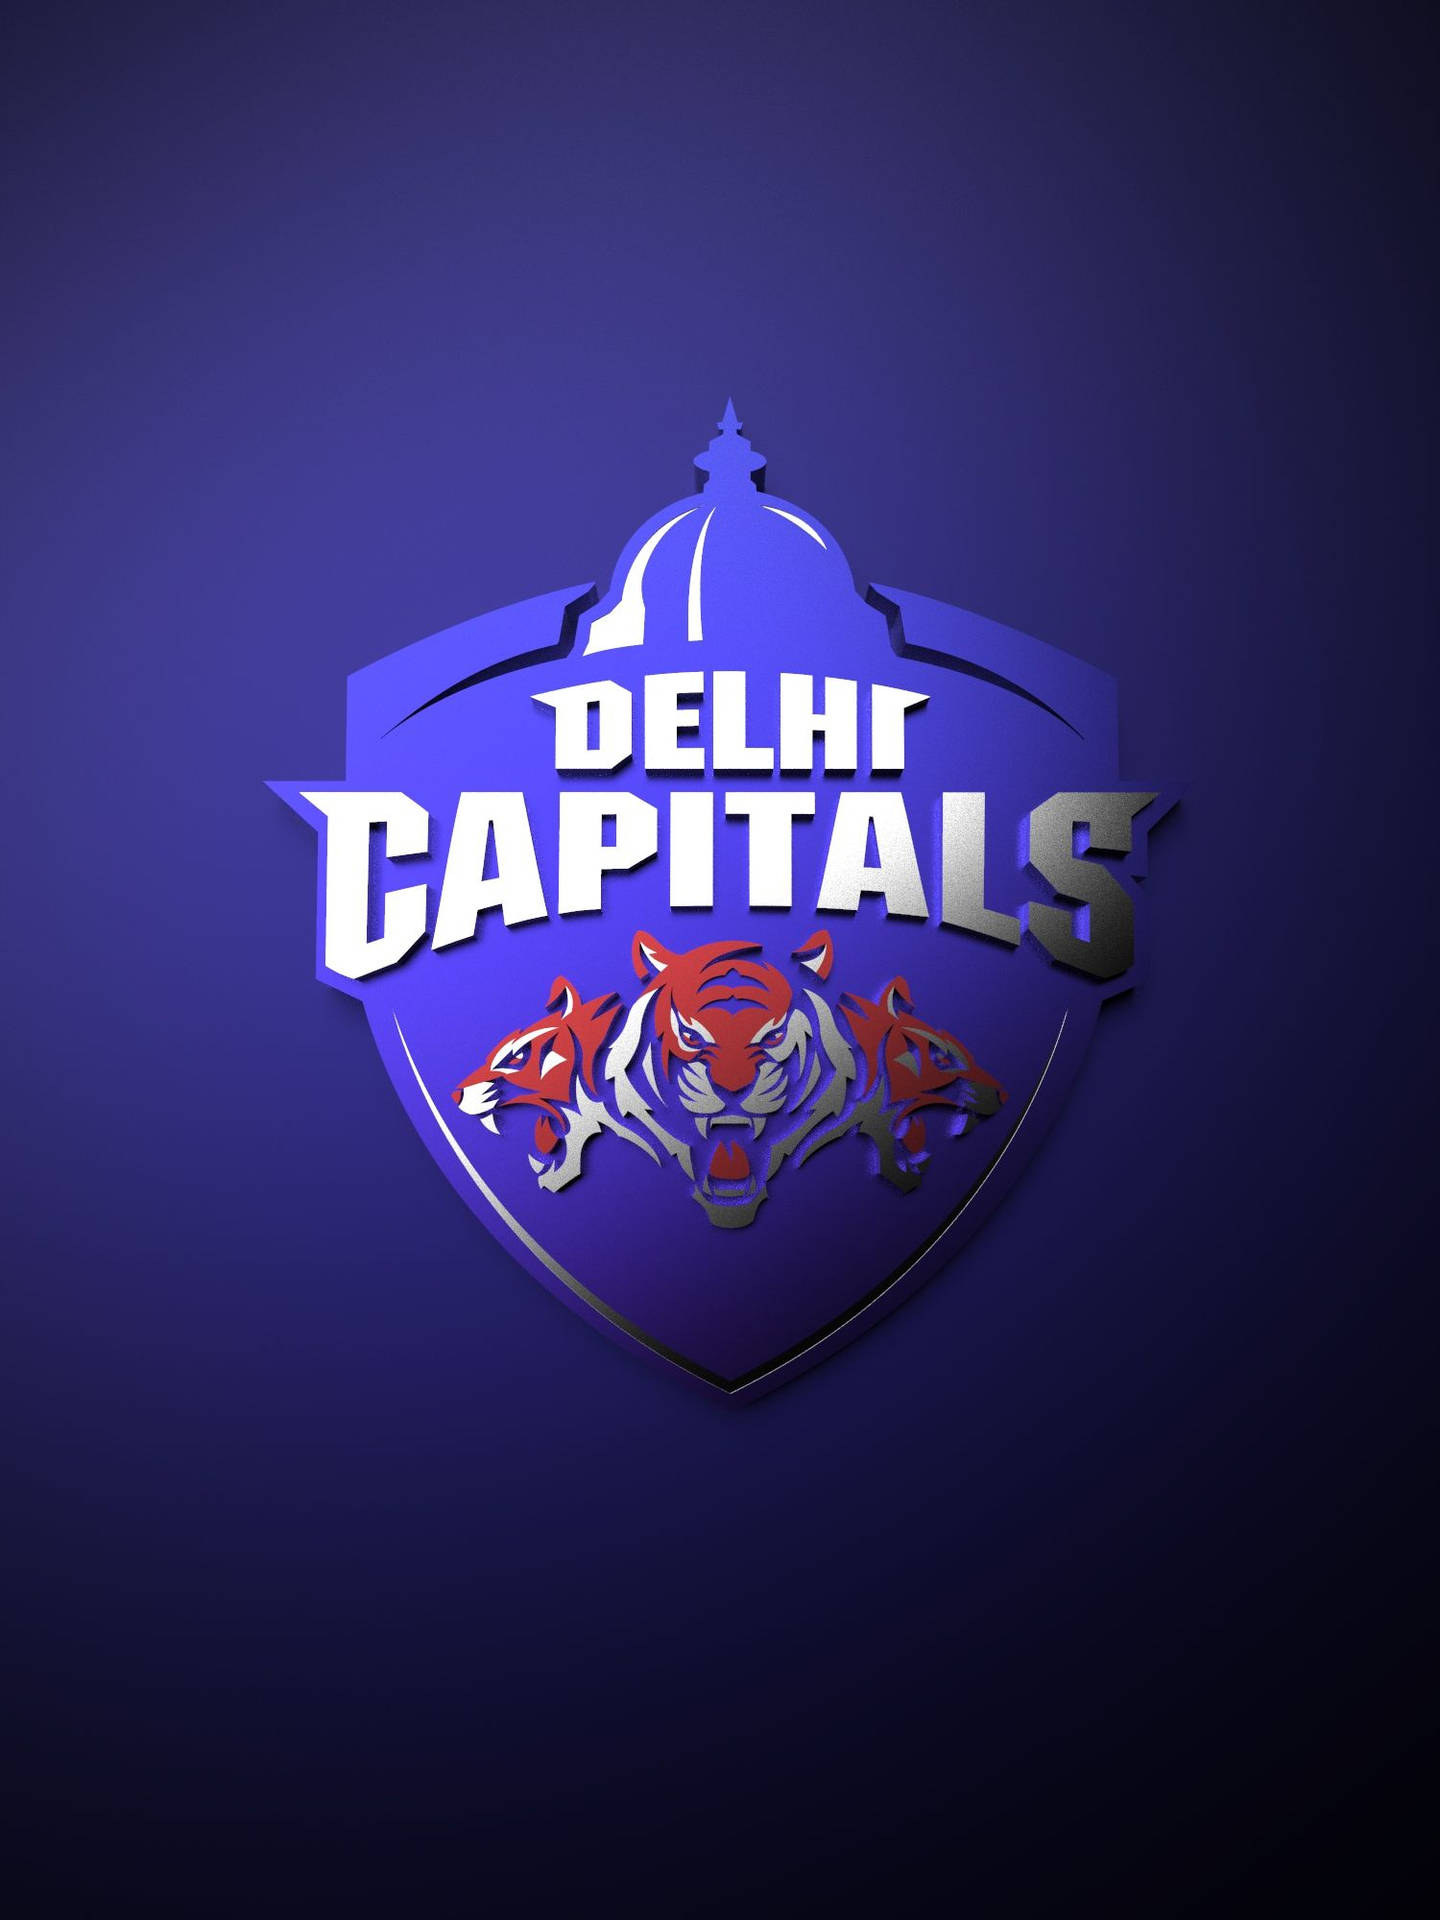 Delhicapitals Logotyp. Wallpaper